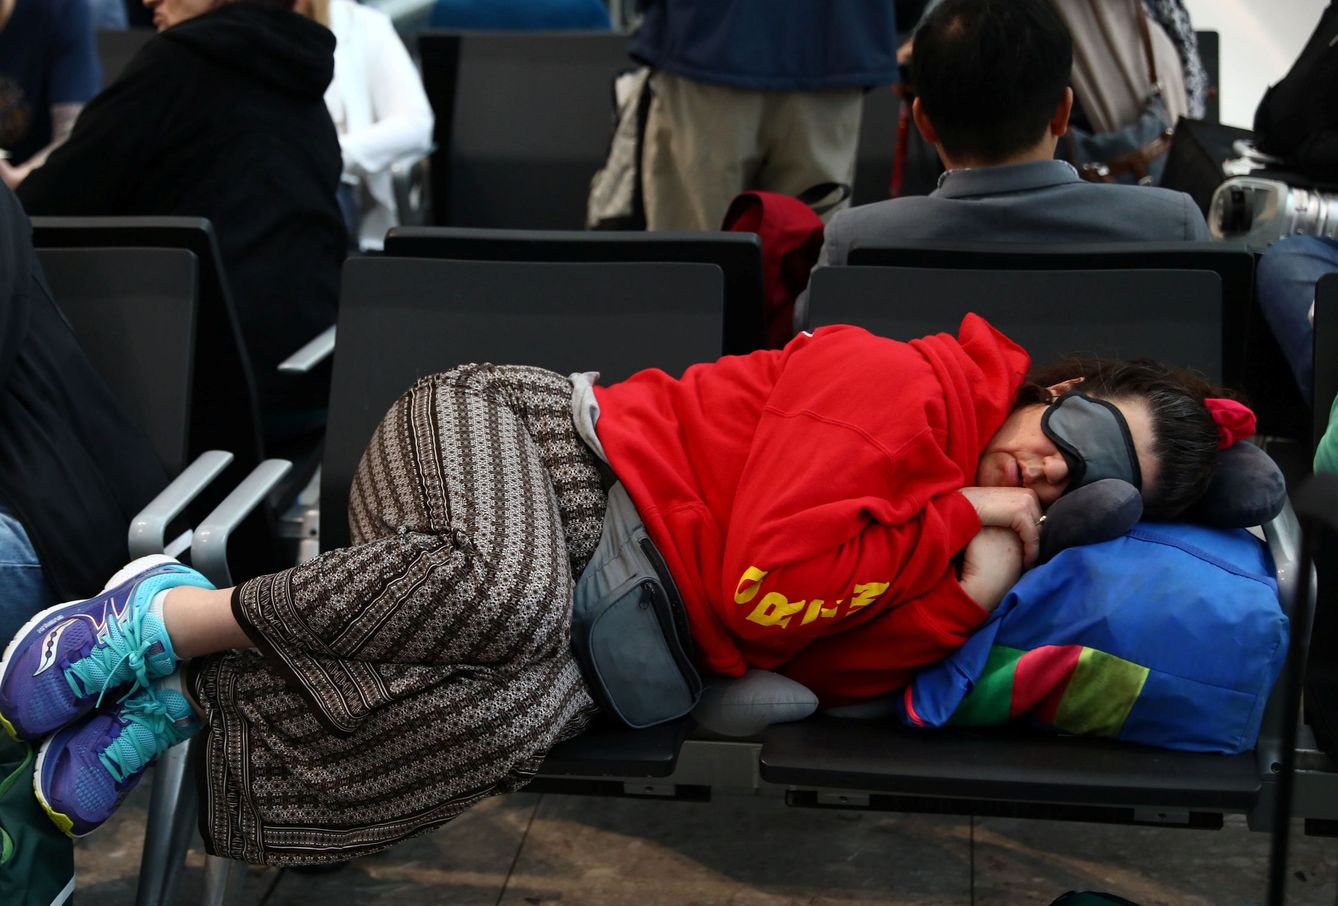 Pasajeros durmiendo en el aeropuerto de Heathrow (REUTERS)